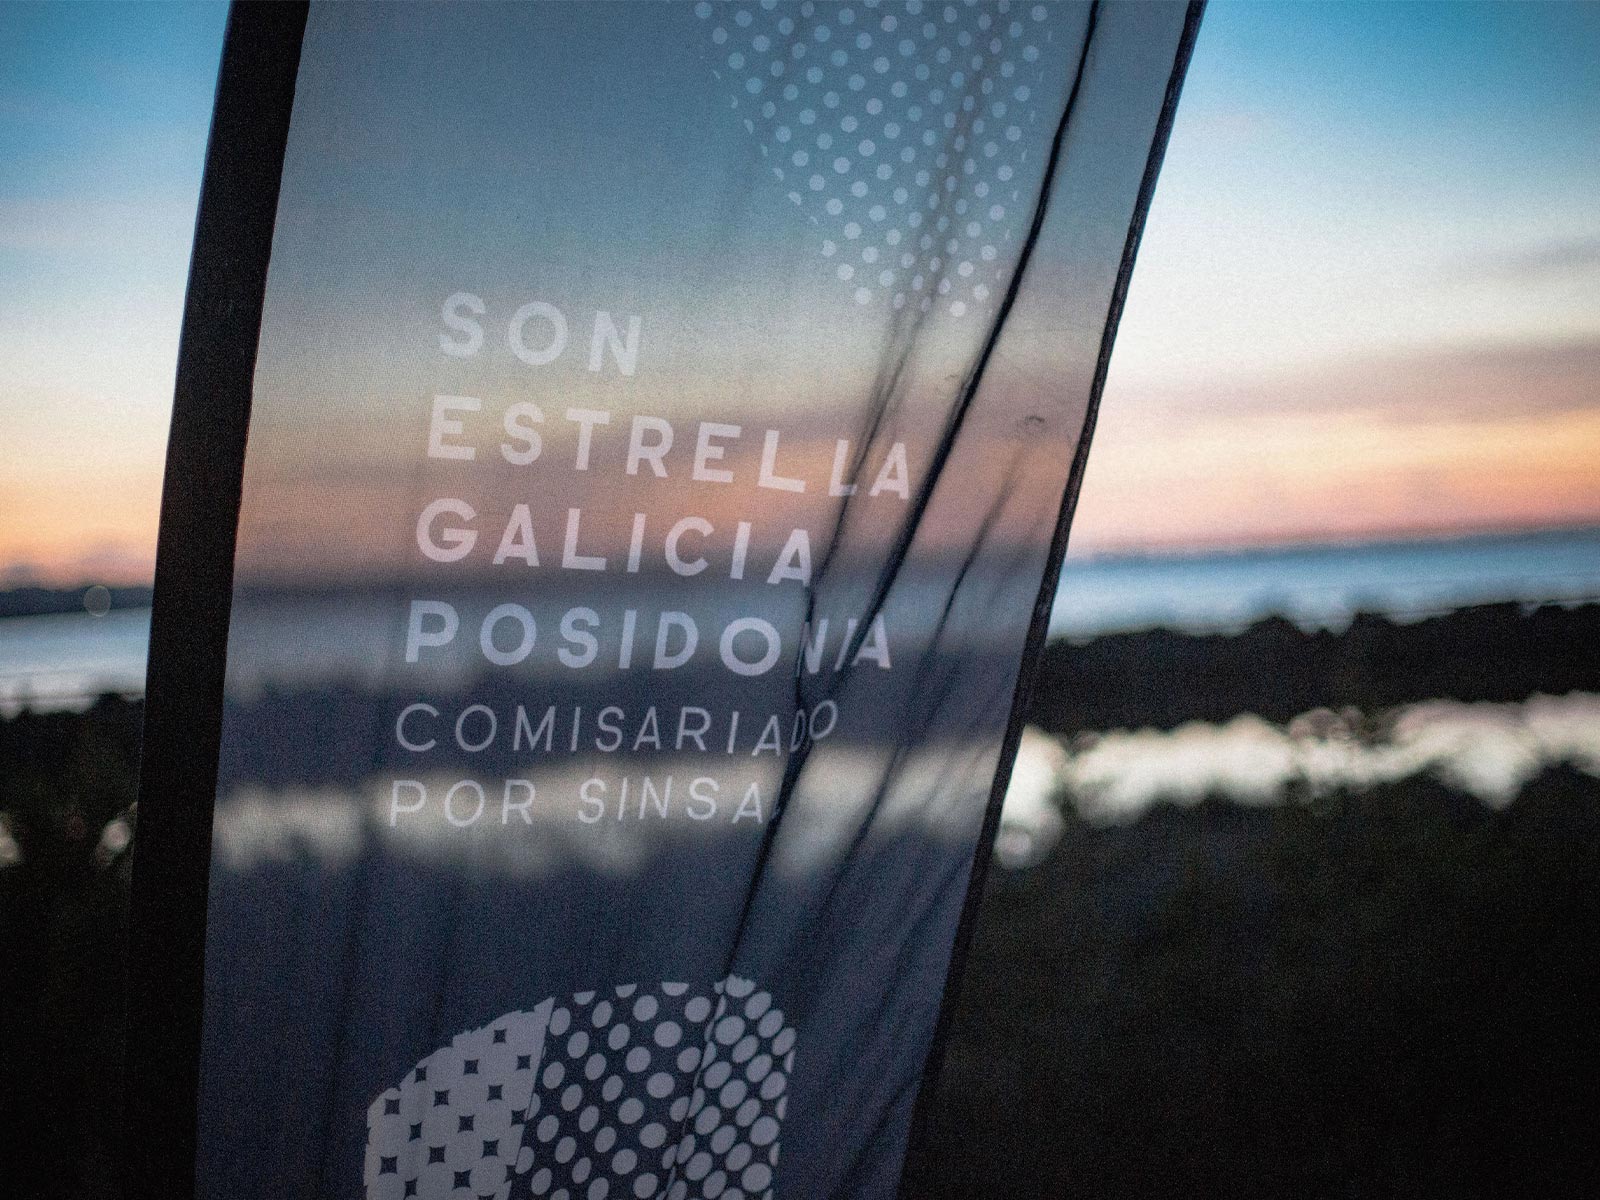 SON Estrella Galicia Posidonia celebrará INCONFORMISMO del 7 al 9 de octubre en Formentera